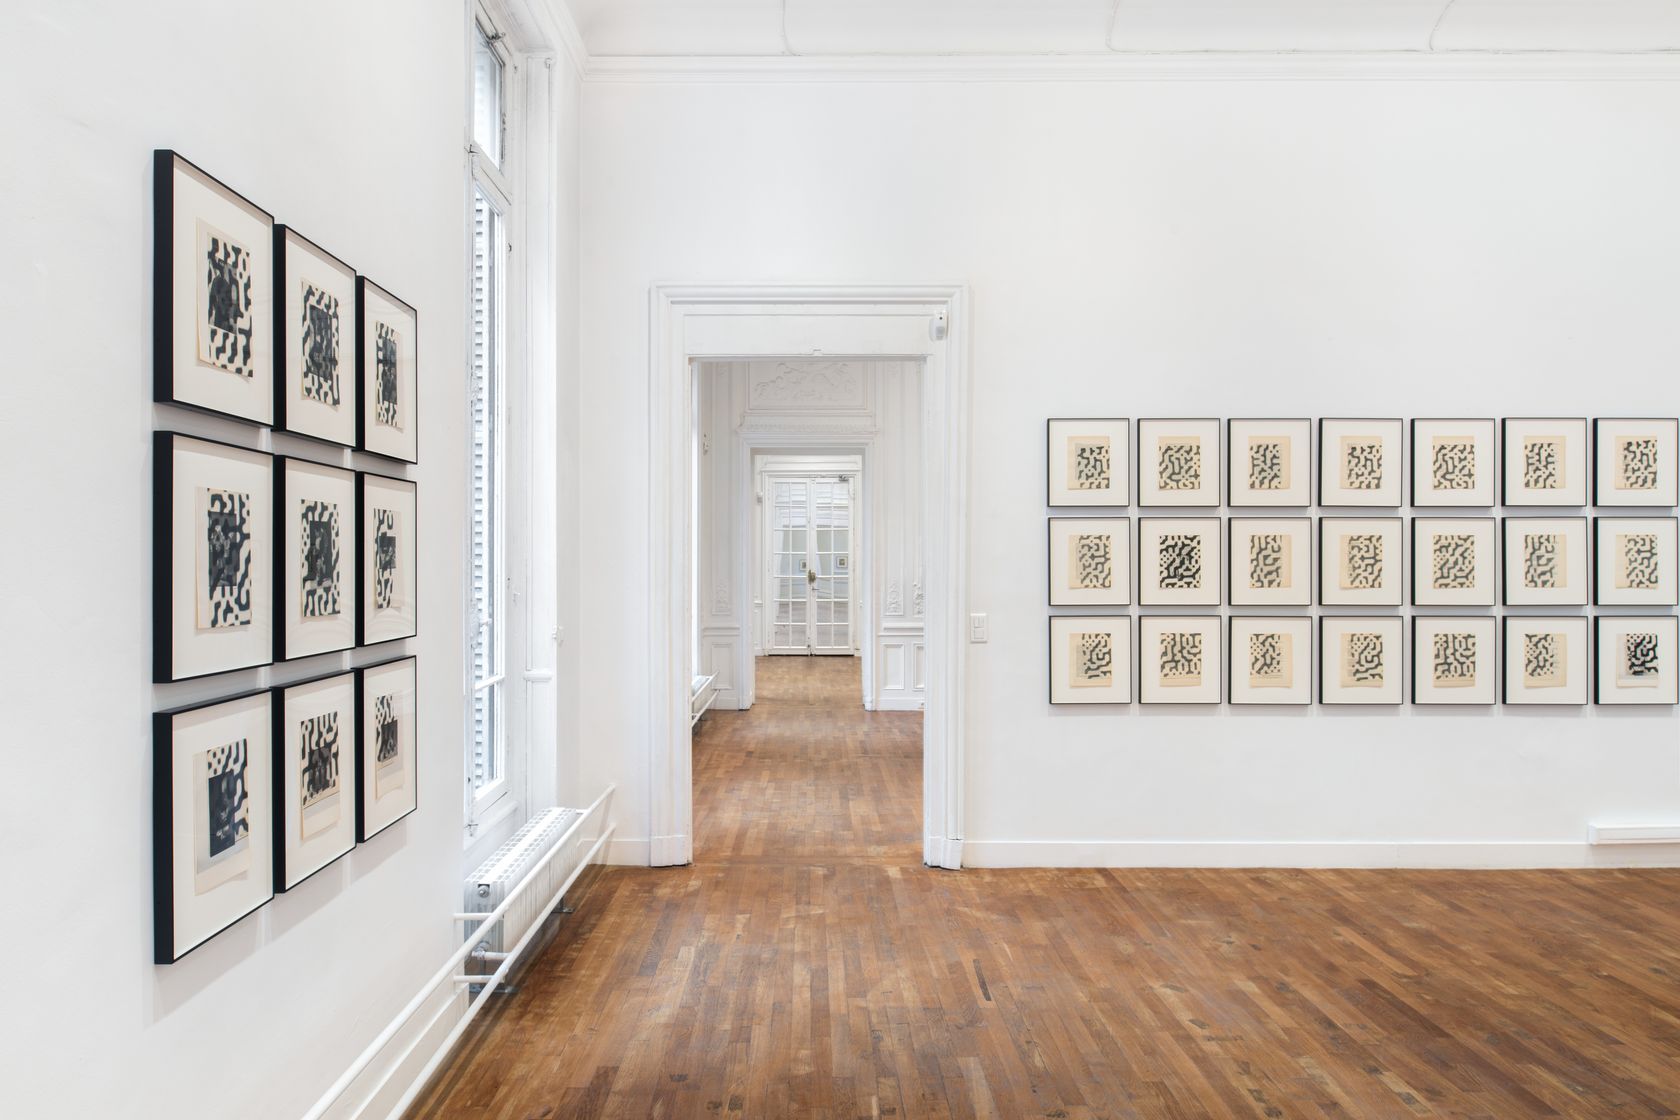 Galerie Matthiesen, Ausstellung, Edouard Manet, 1928, 6. Februar bis 18. März, Vol. II